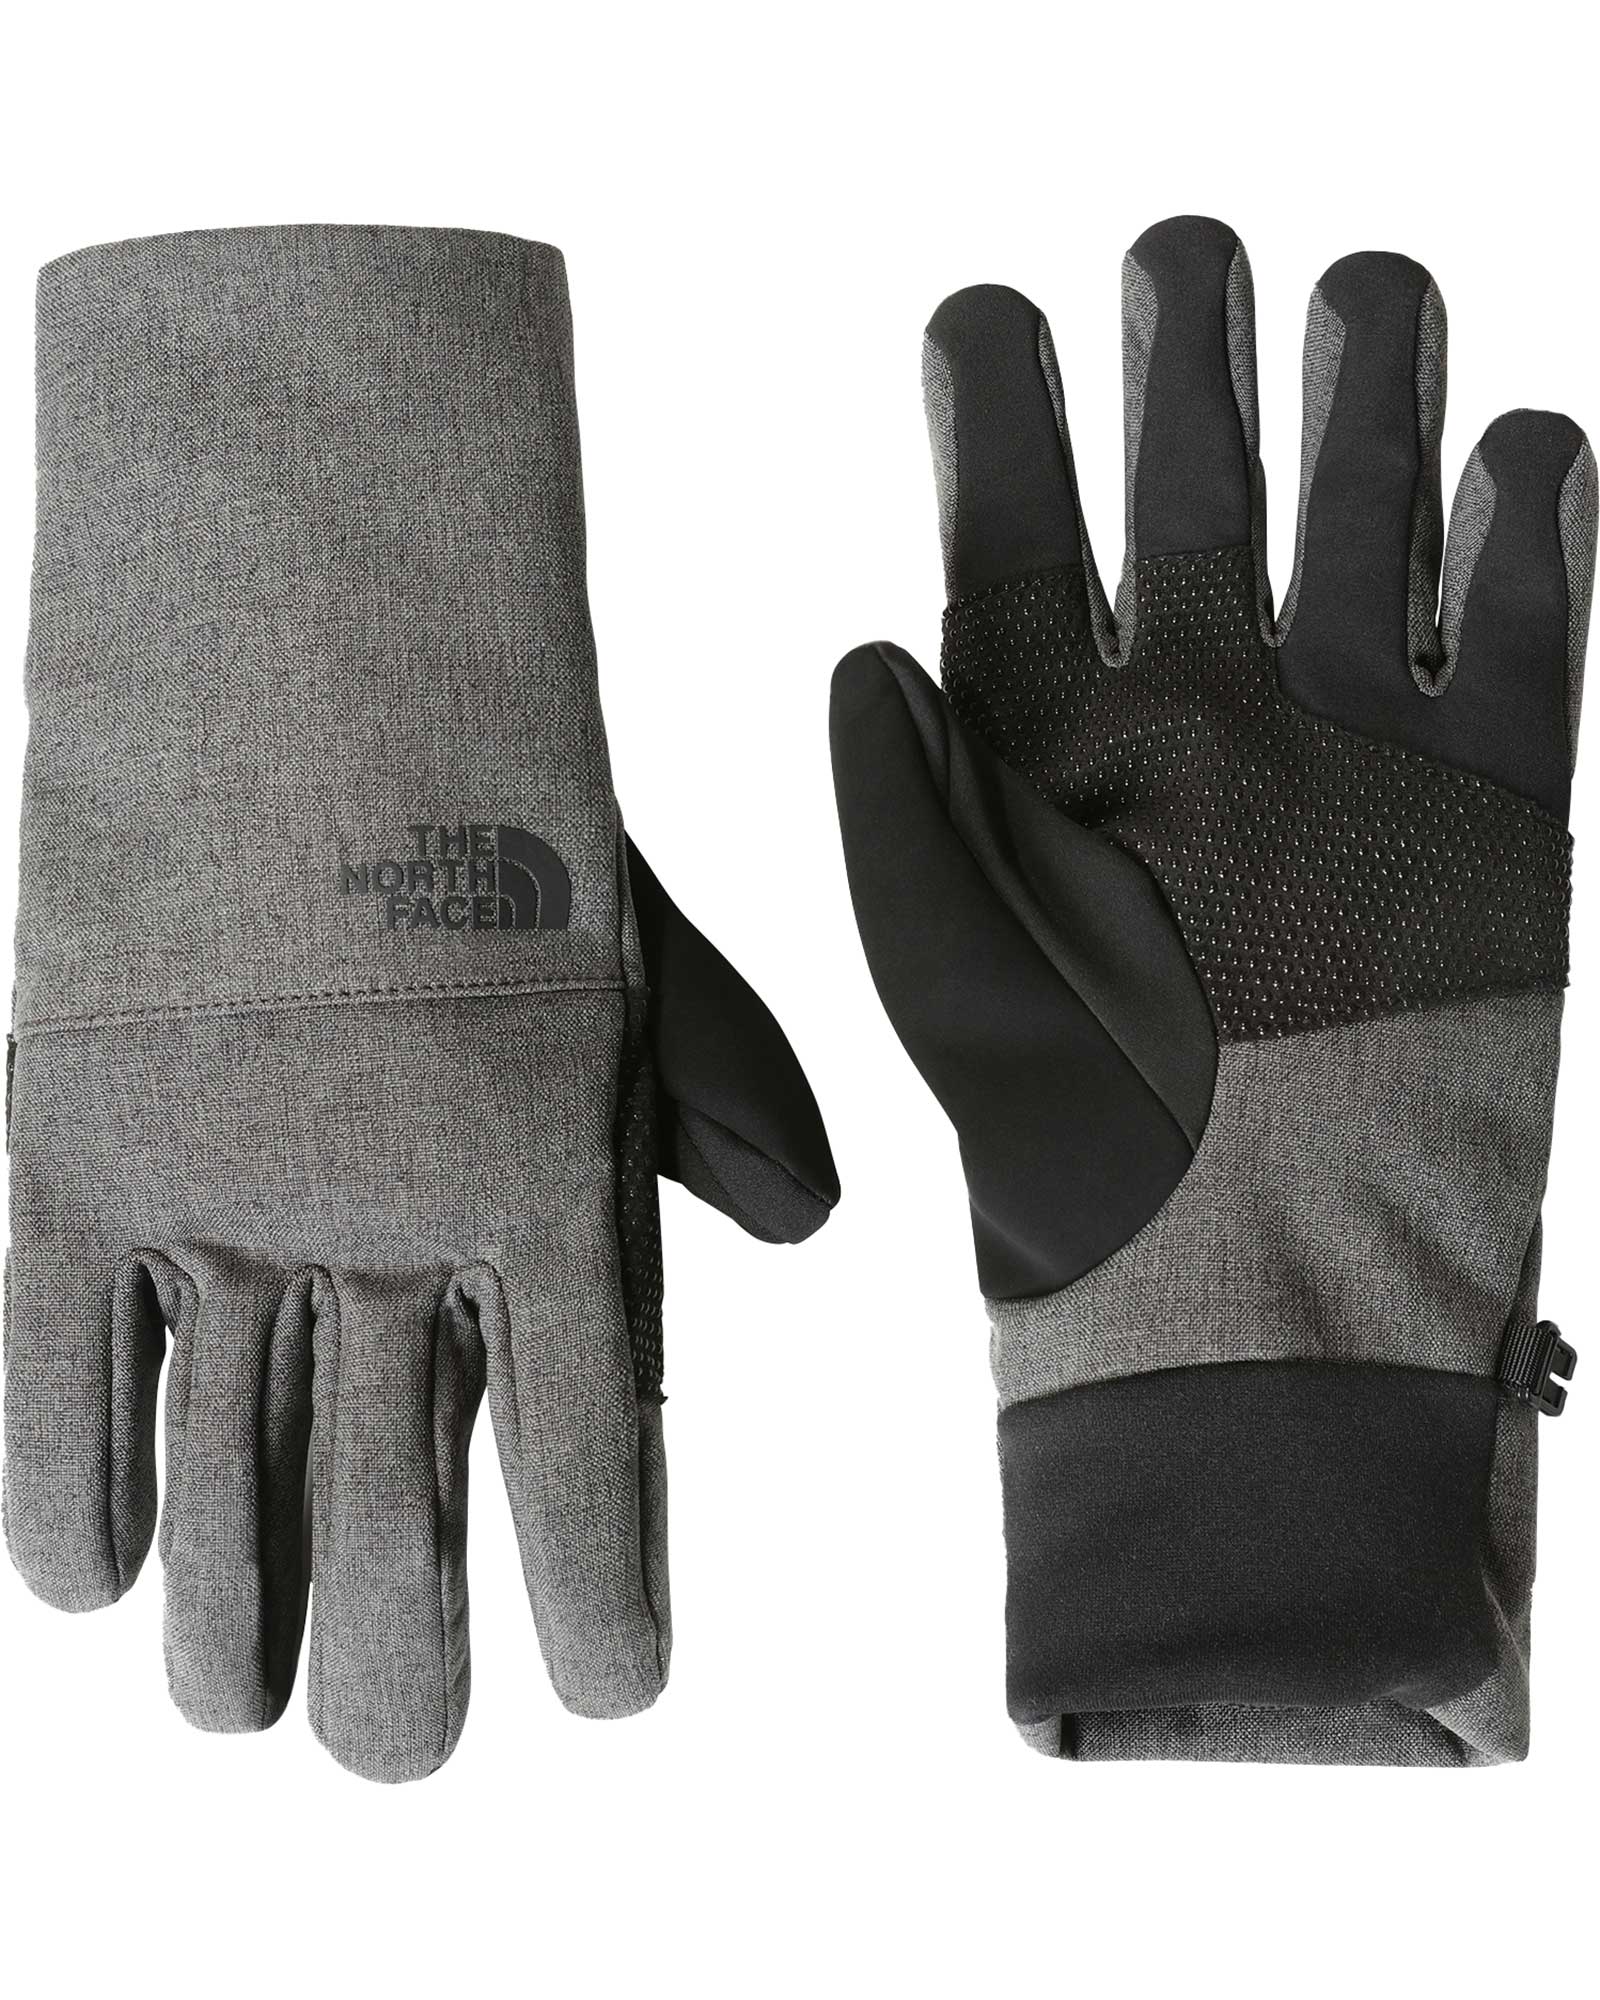 The North Face Apex Etip Men’s Gloves - TNF Dark Grey Heather XL